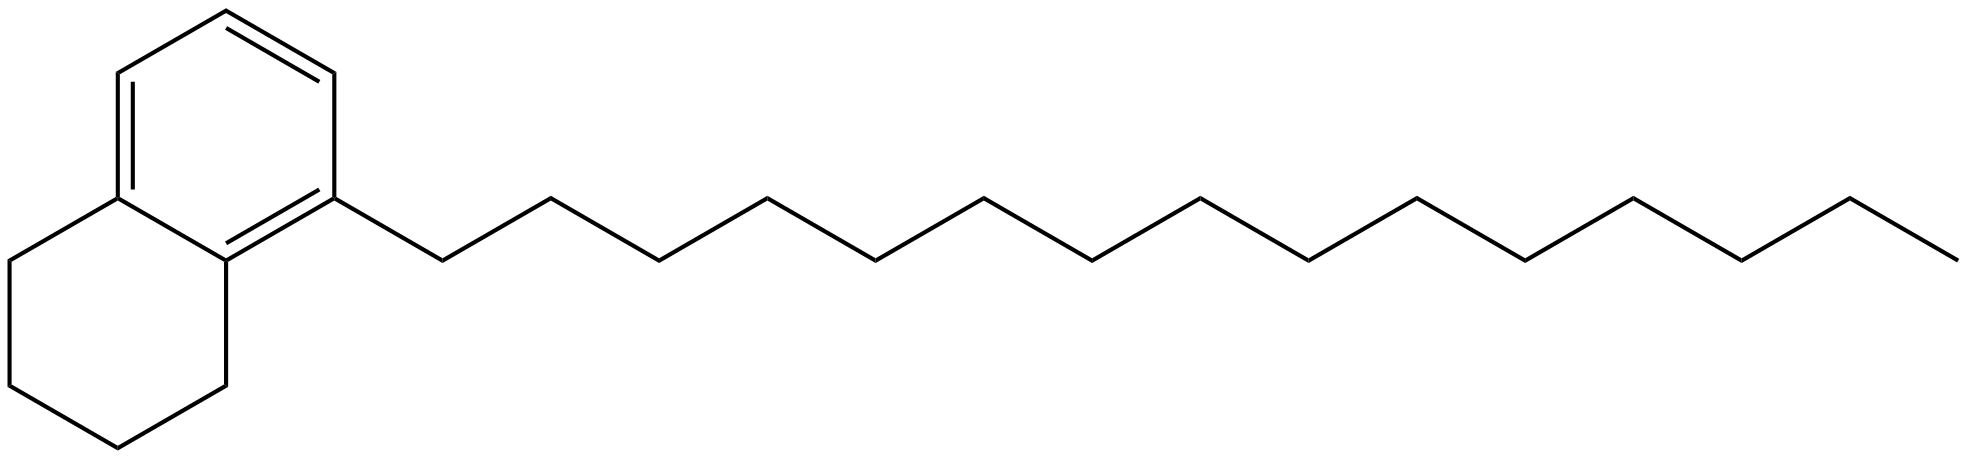 Image of 5-pentadecyl-1,2,3,4-tetrahydronaphthalene